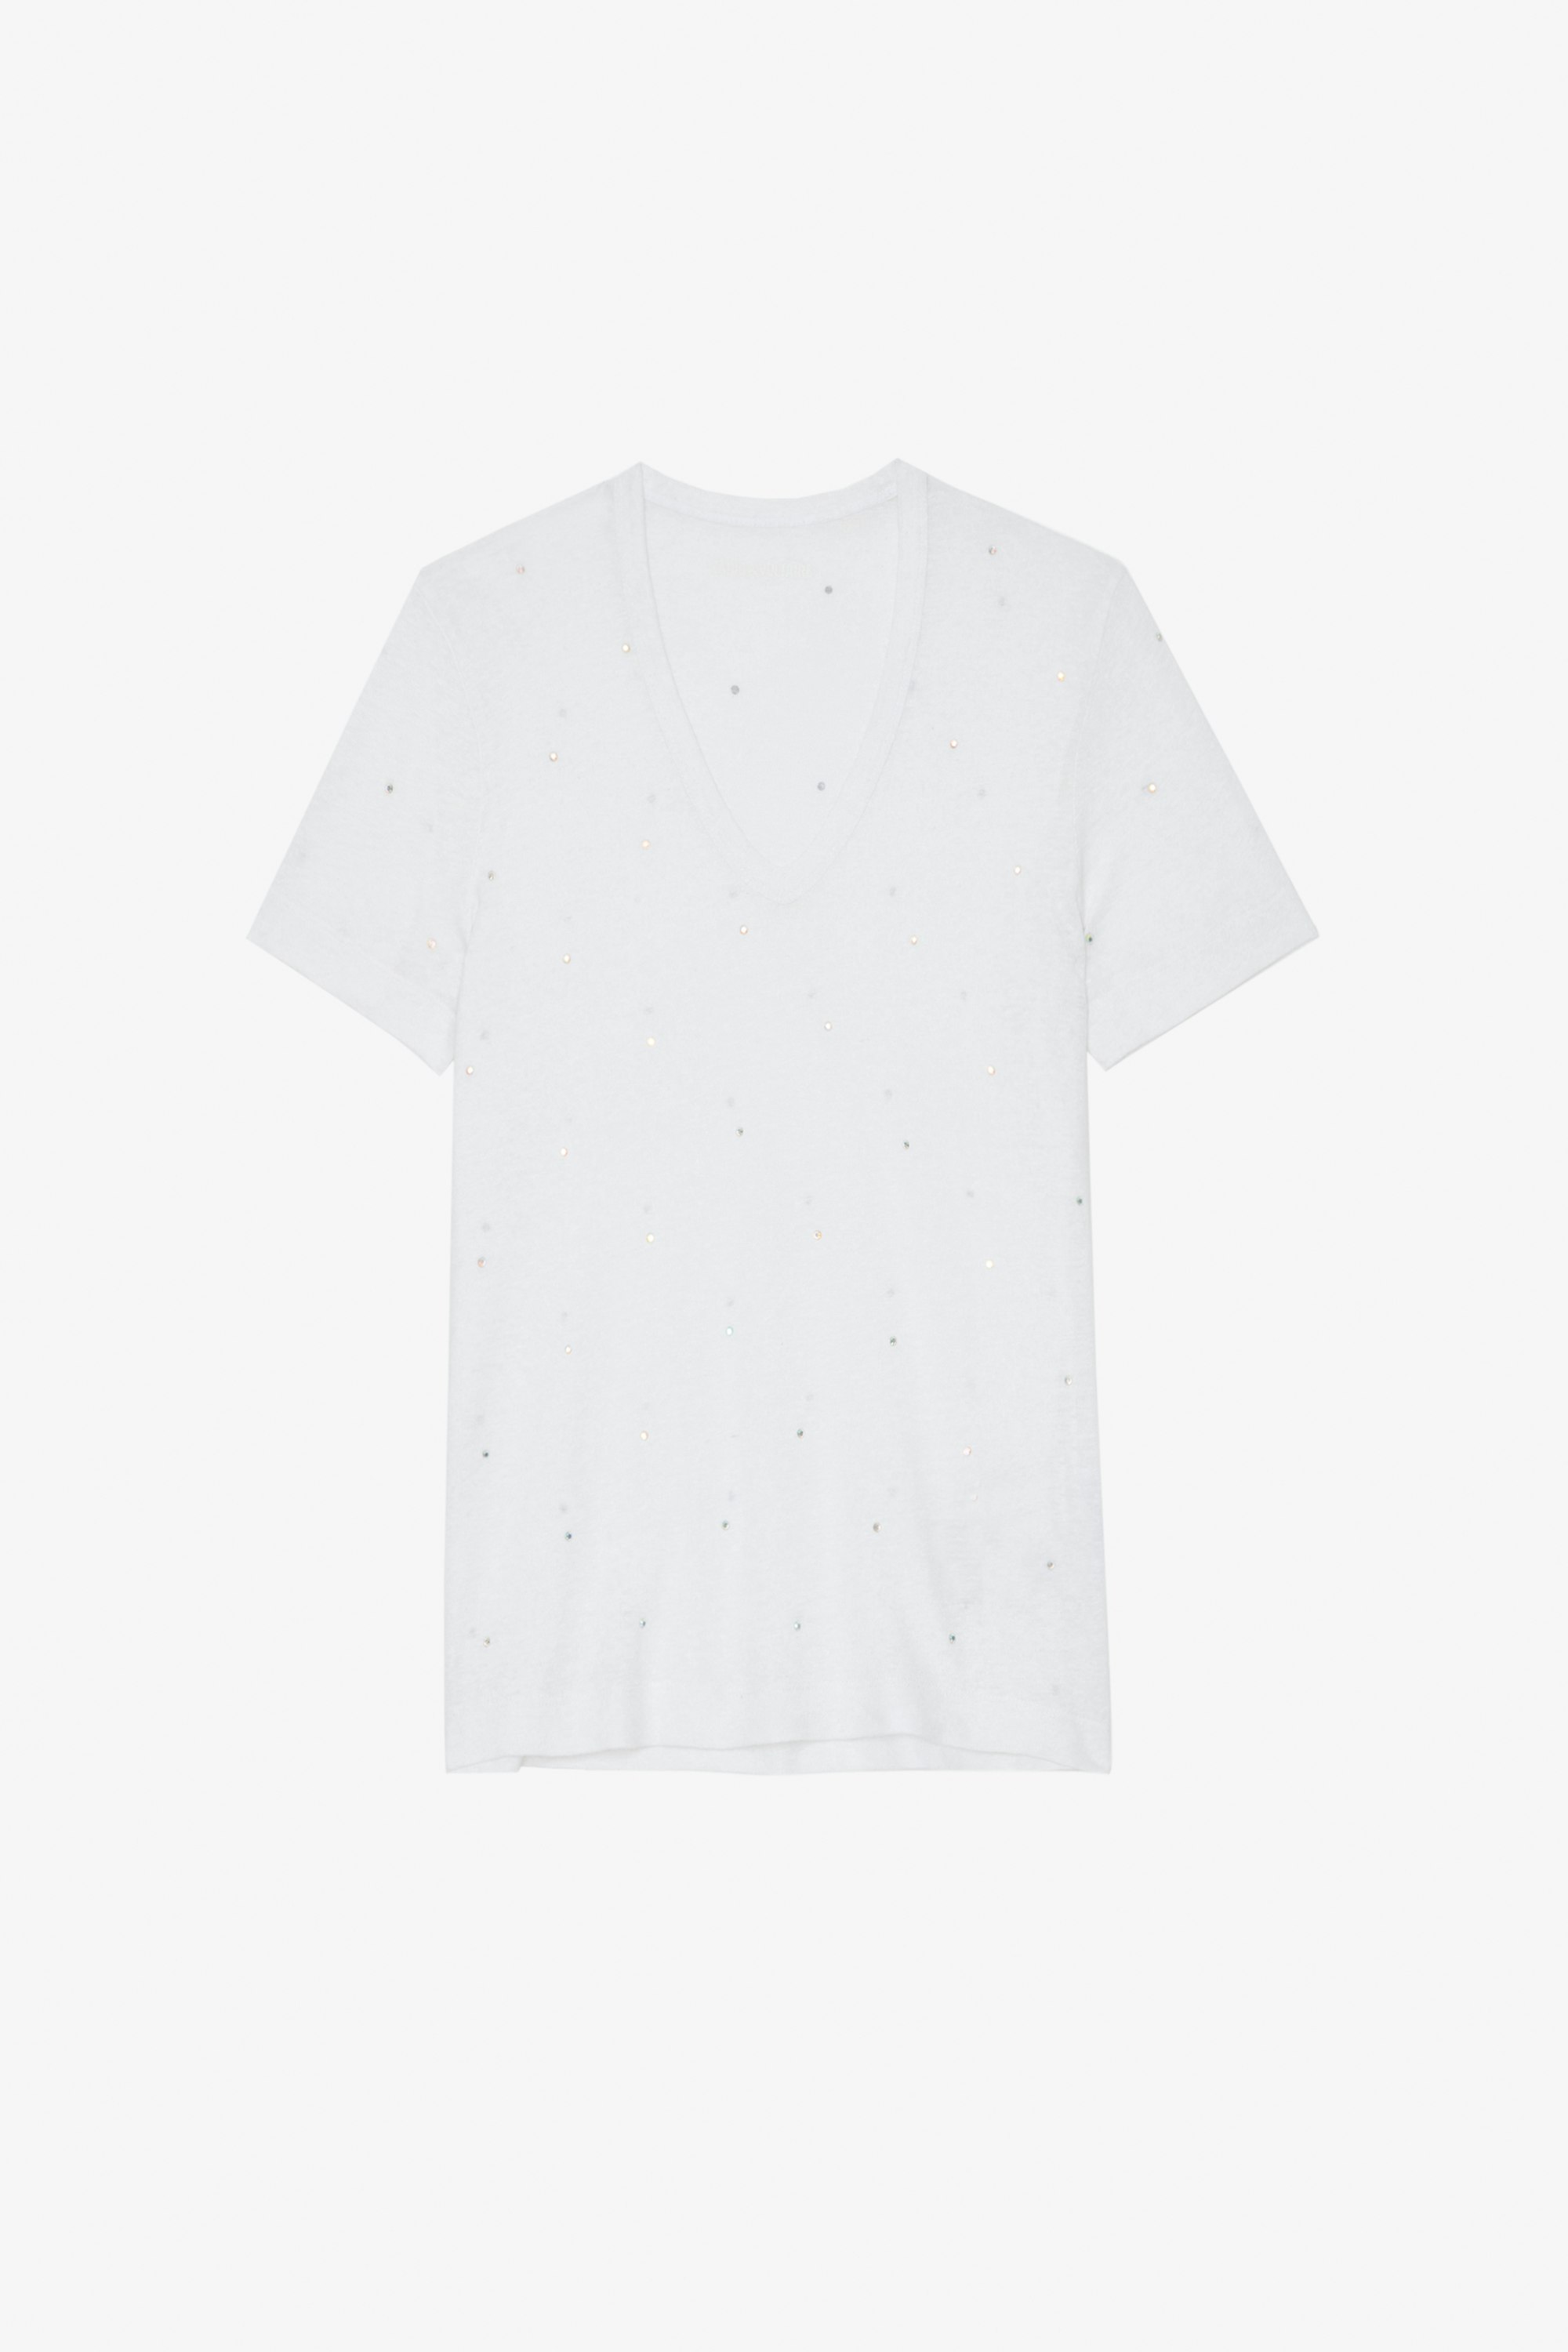 T-Shirt Wassa Weißes, mit Strasssteinen verziertes Damen-T-Shirt